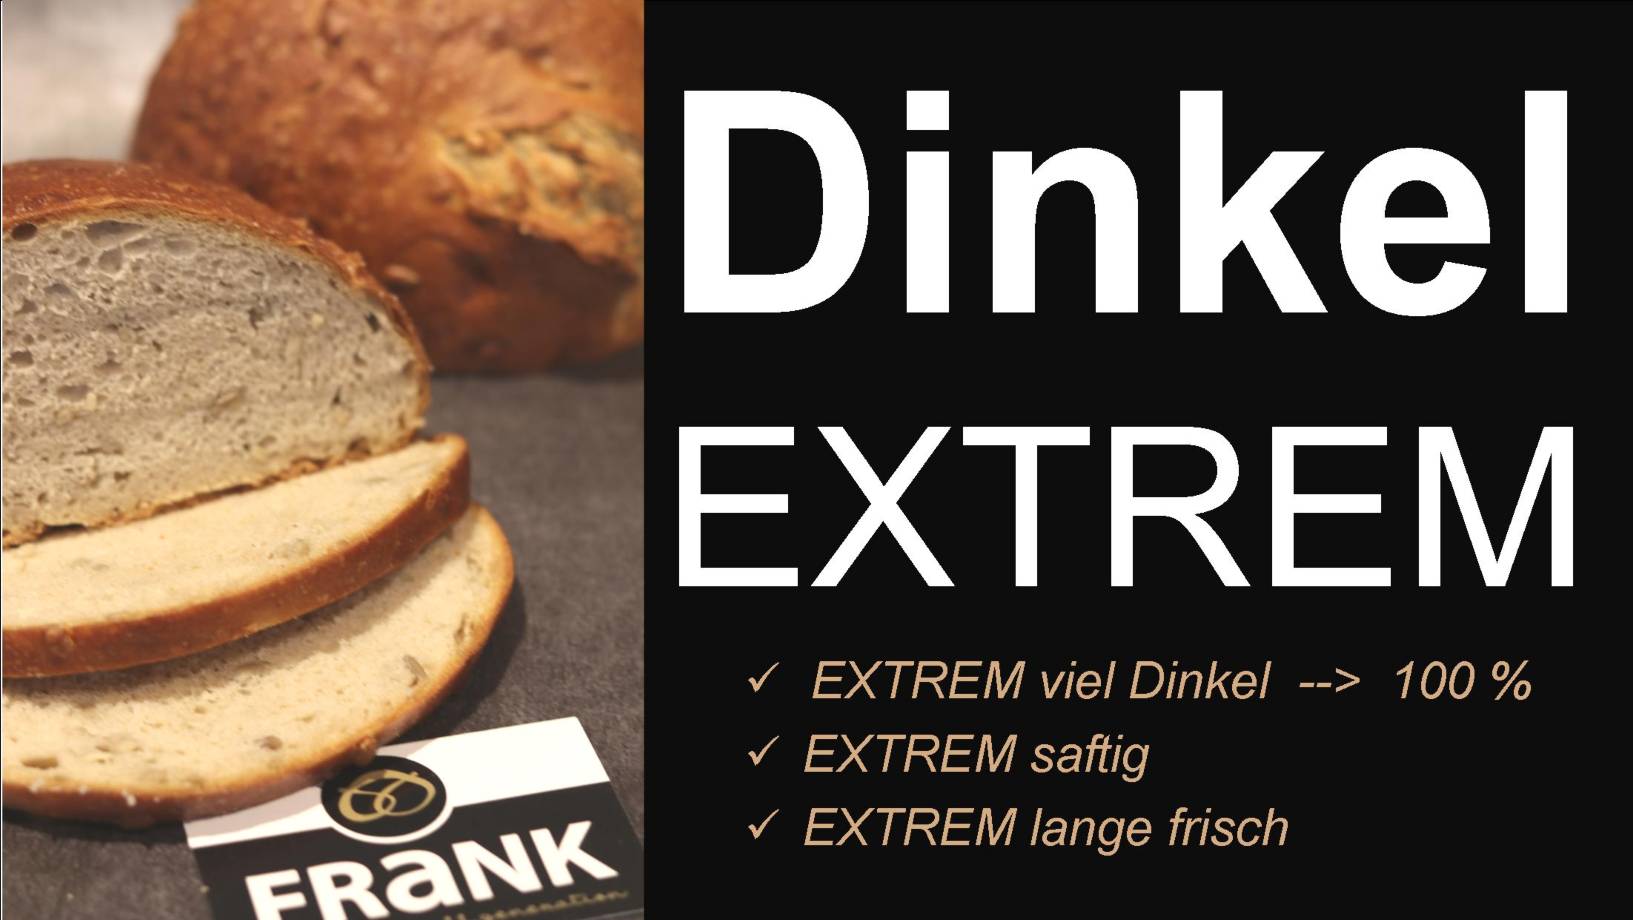 DInkel Extrem